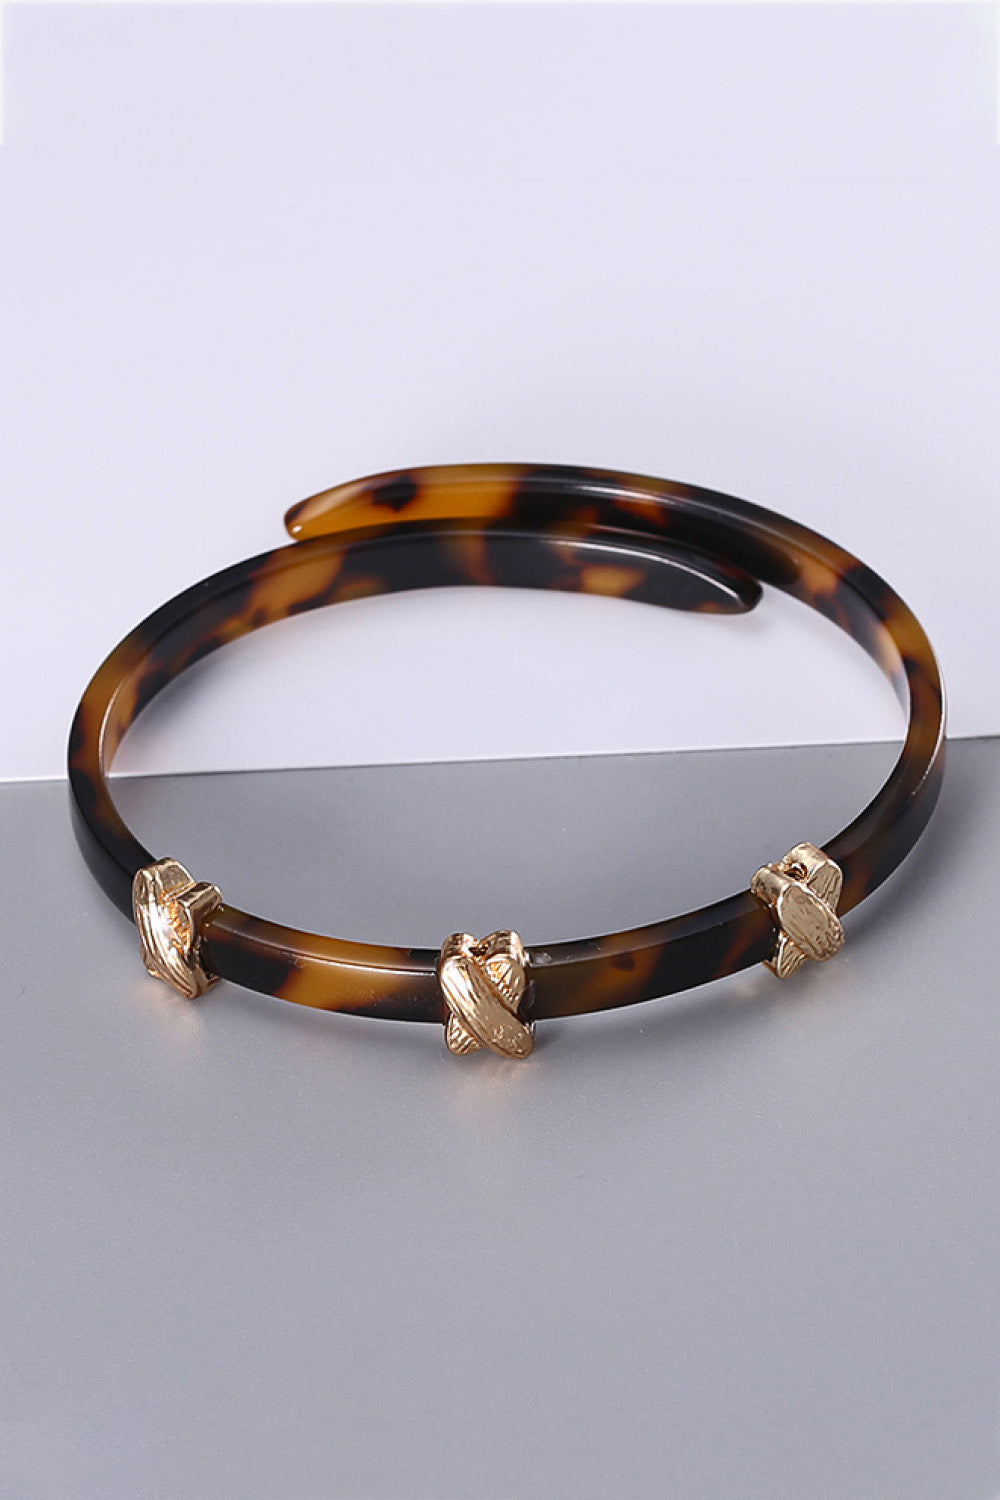 Happy Beginnings Adjustable Bracelet - Brown / One Size - Women’s Jewelry - Bracelets - 2 - 2024